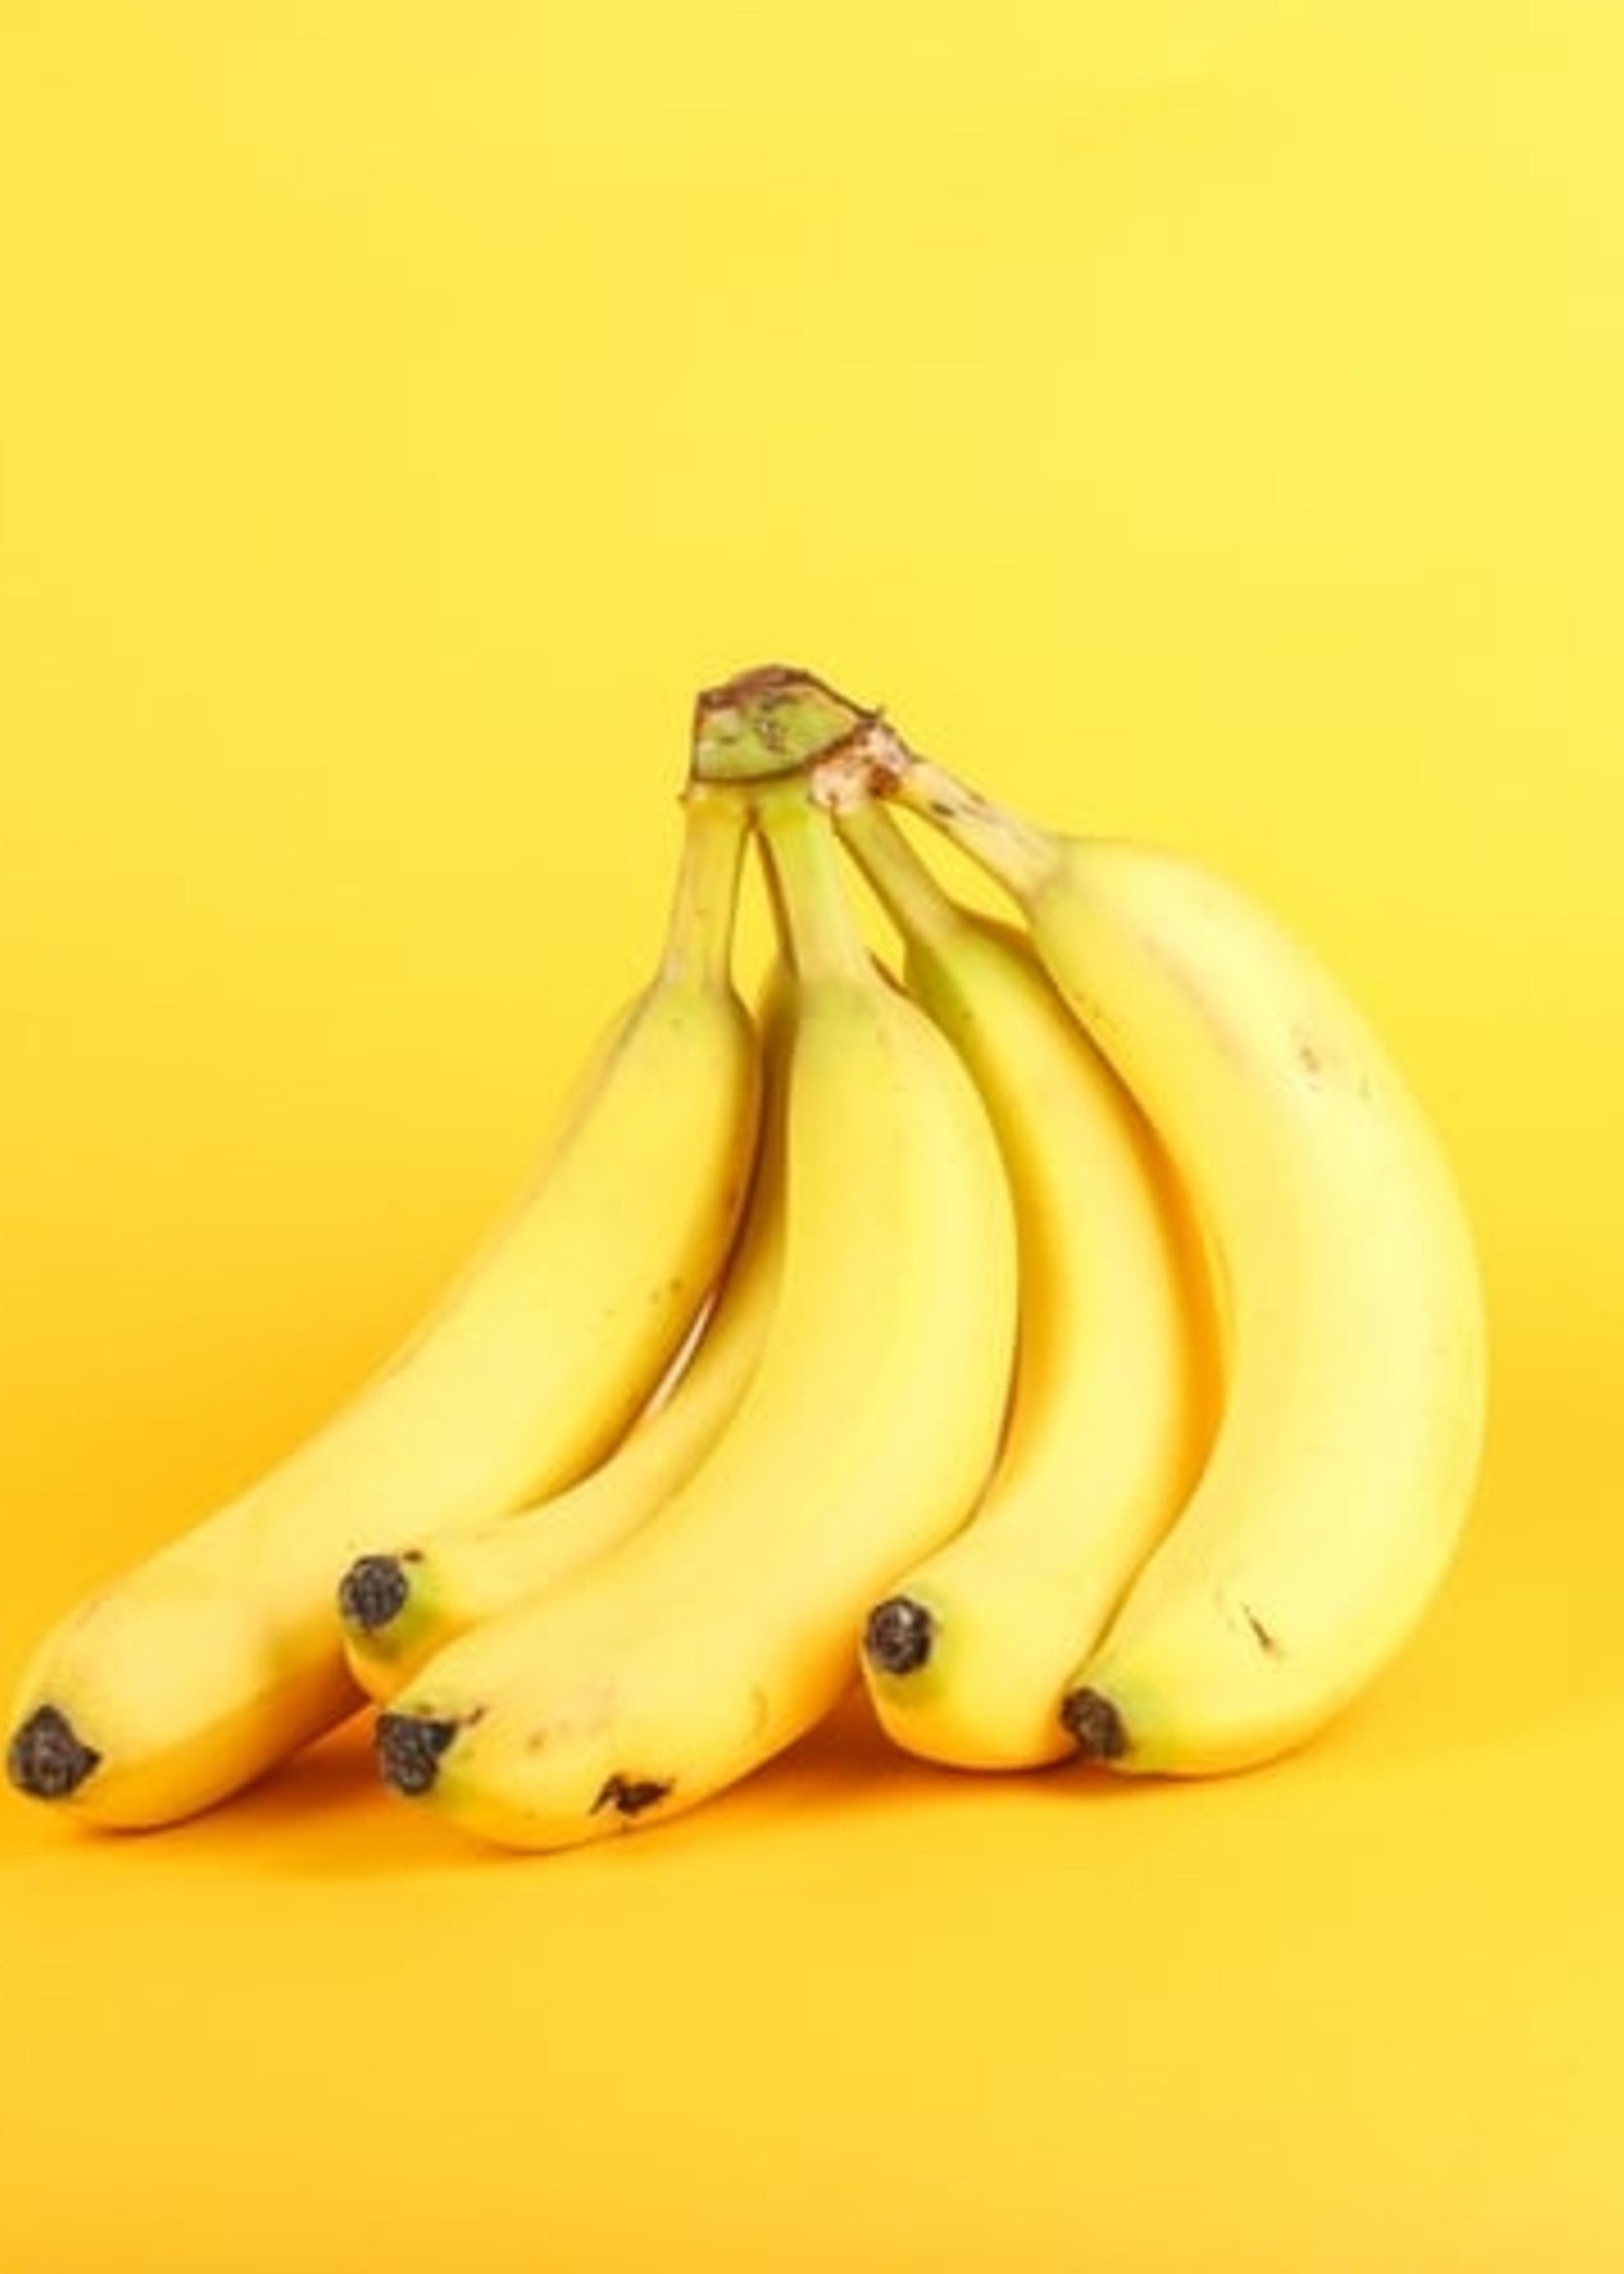 Bananes biologiques - une main